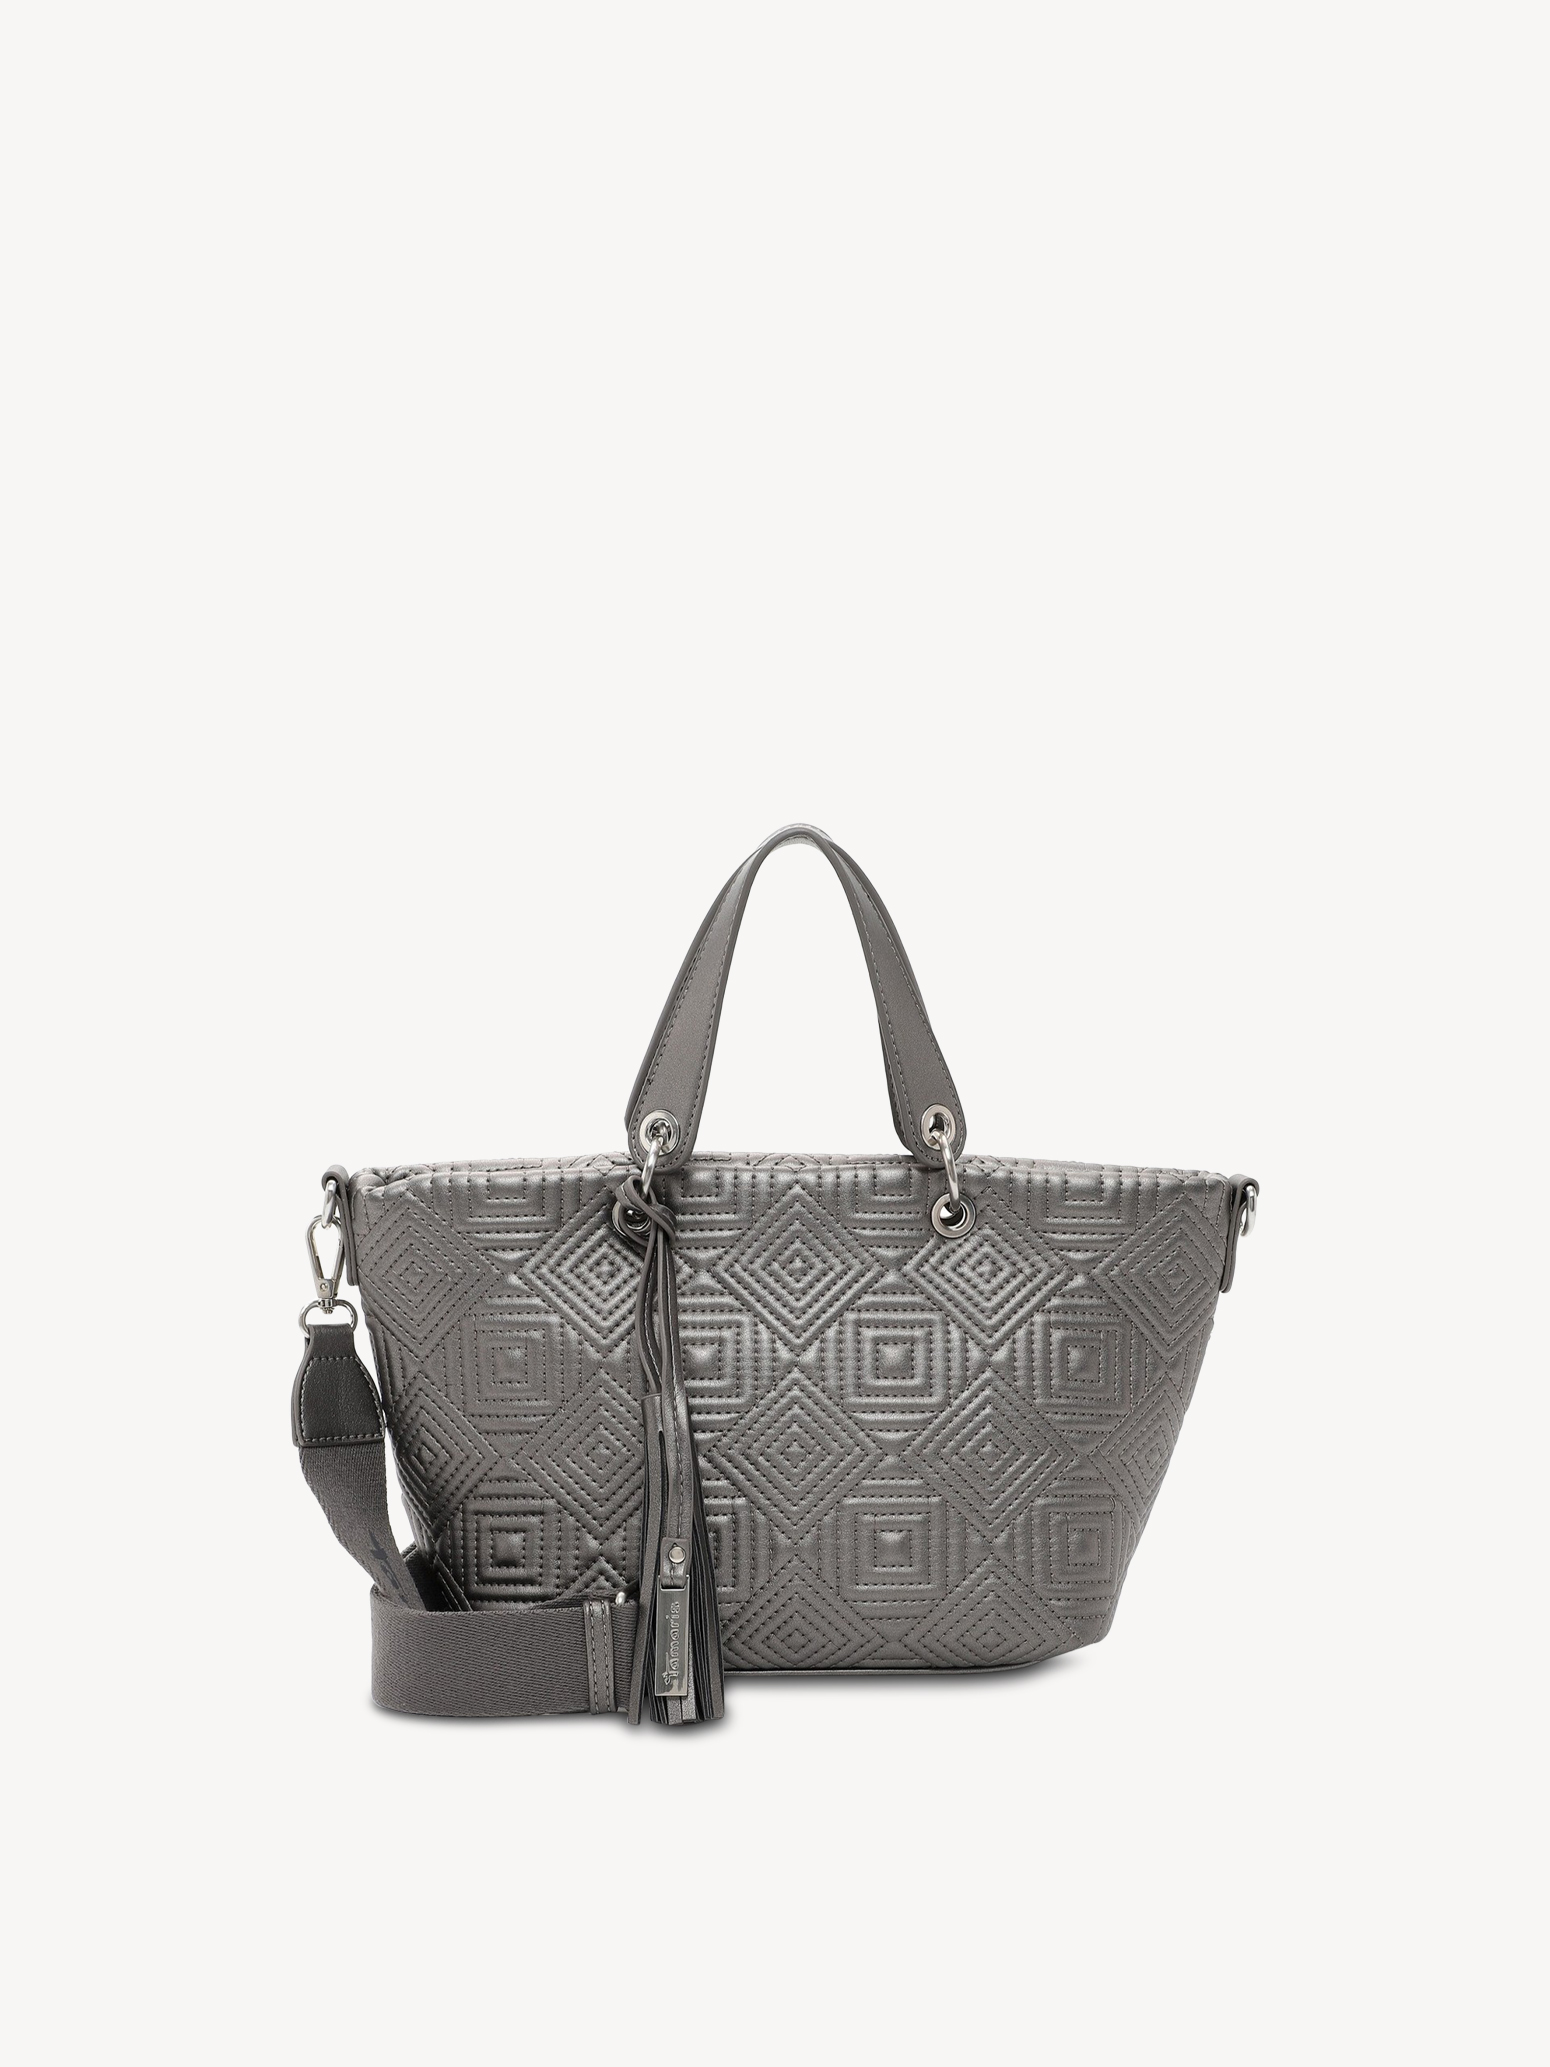 Shopping bag - silver